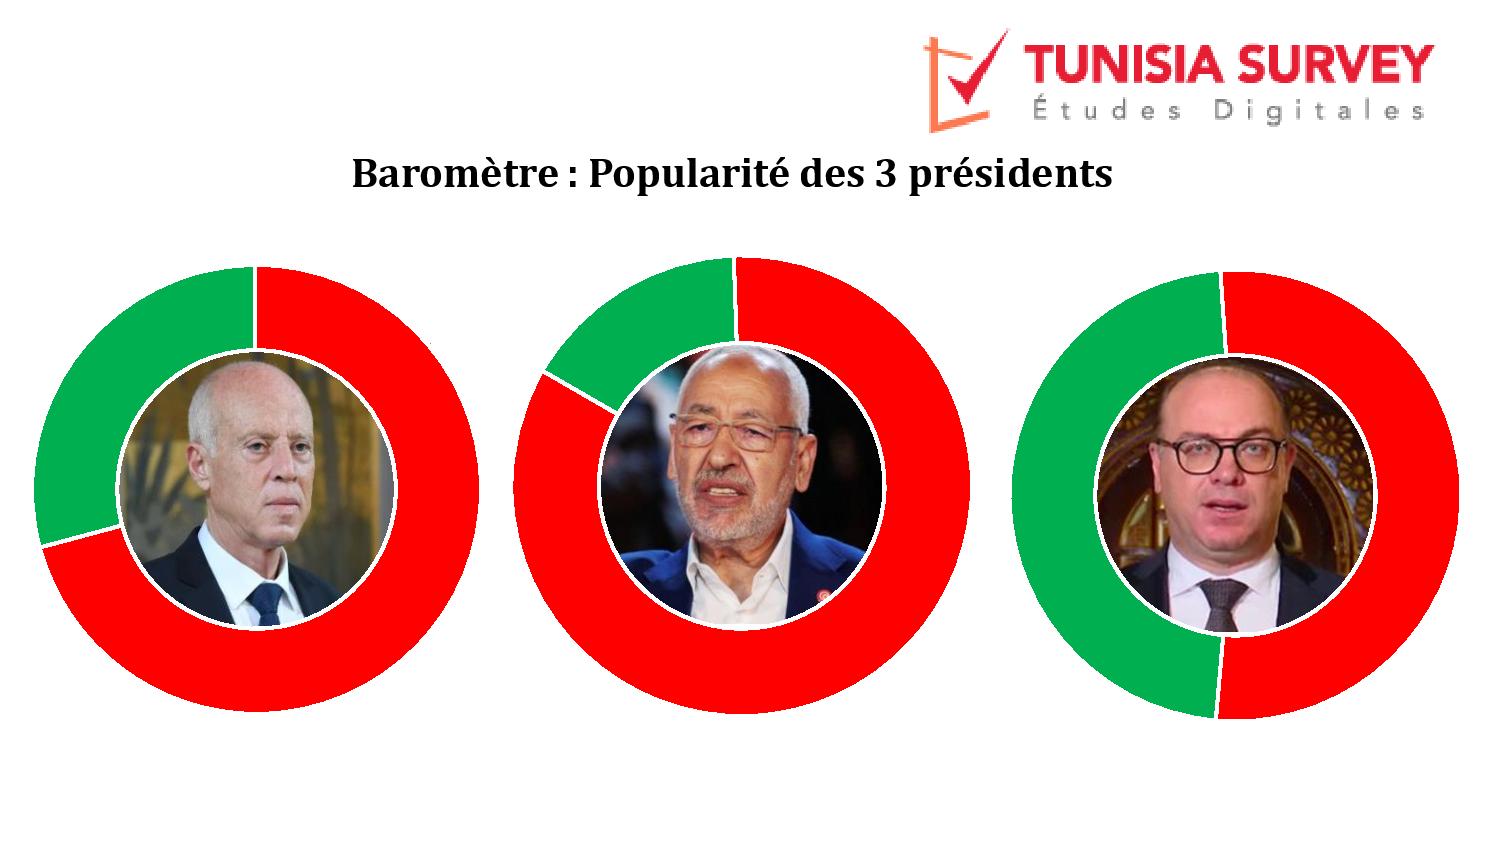 Baromètre de popularité des 3 présidents : Kaïs Saïed et Rached Ghannouchi déçoivent